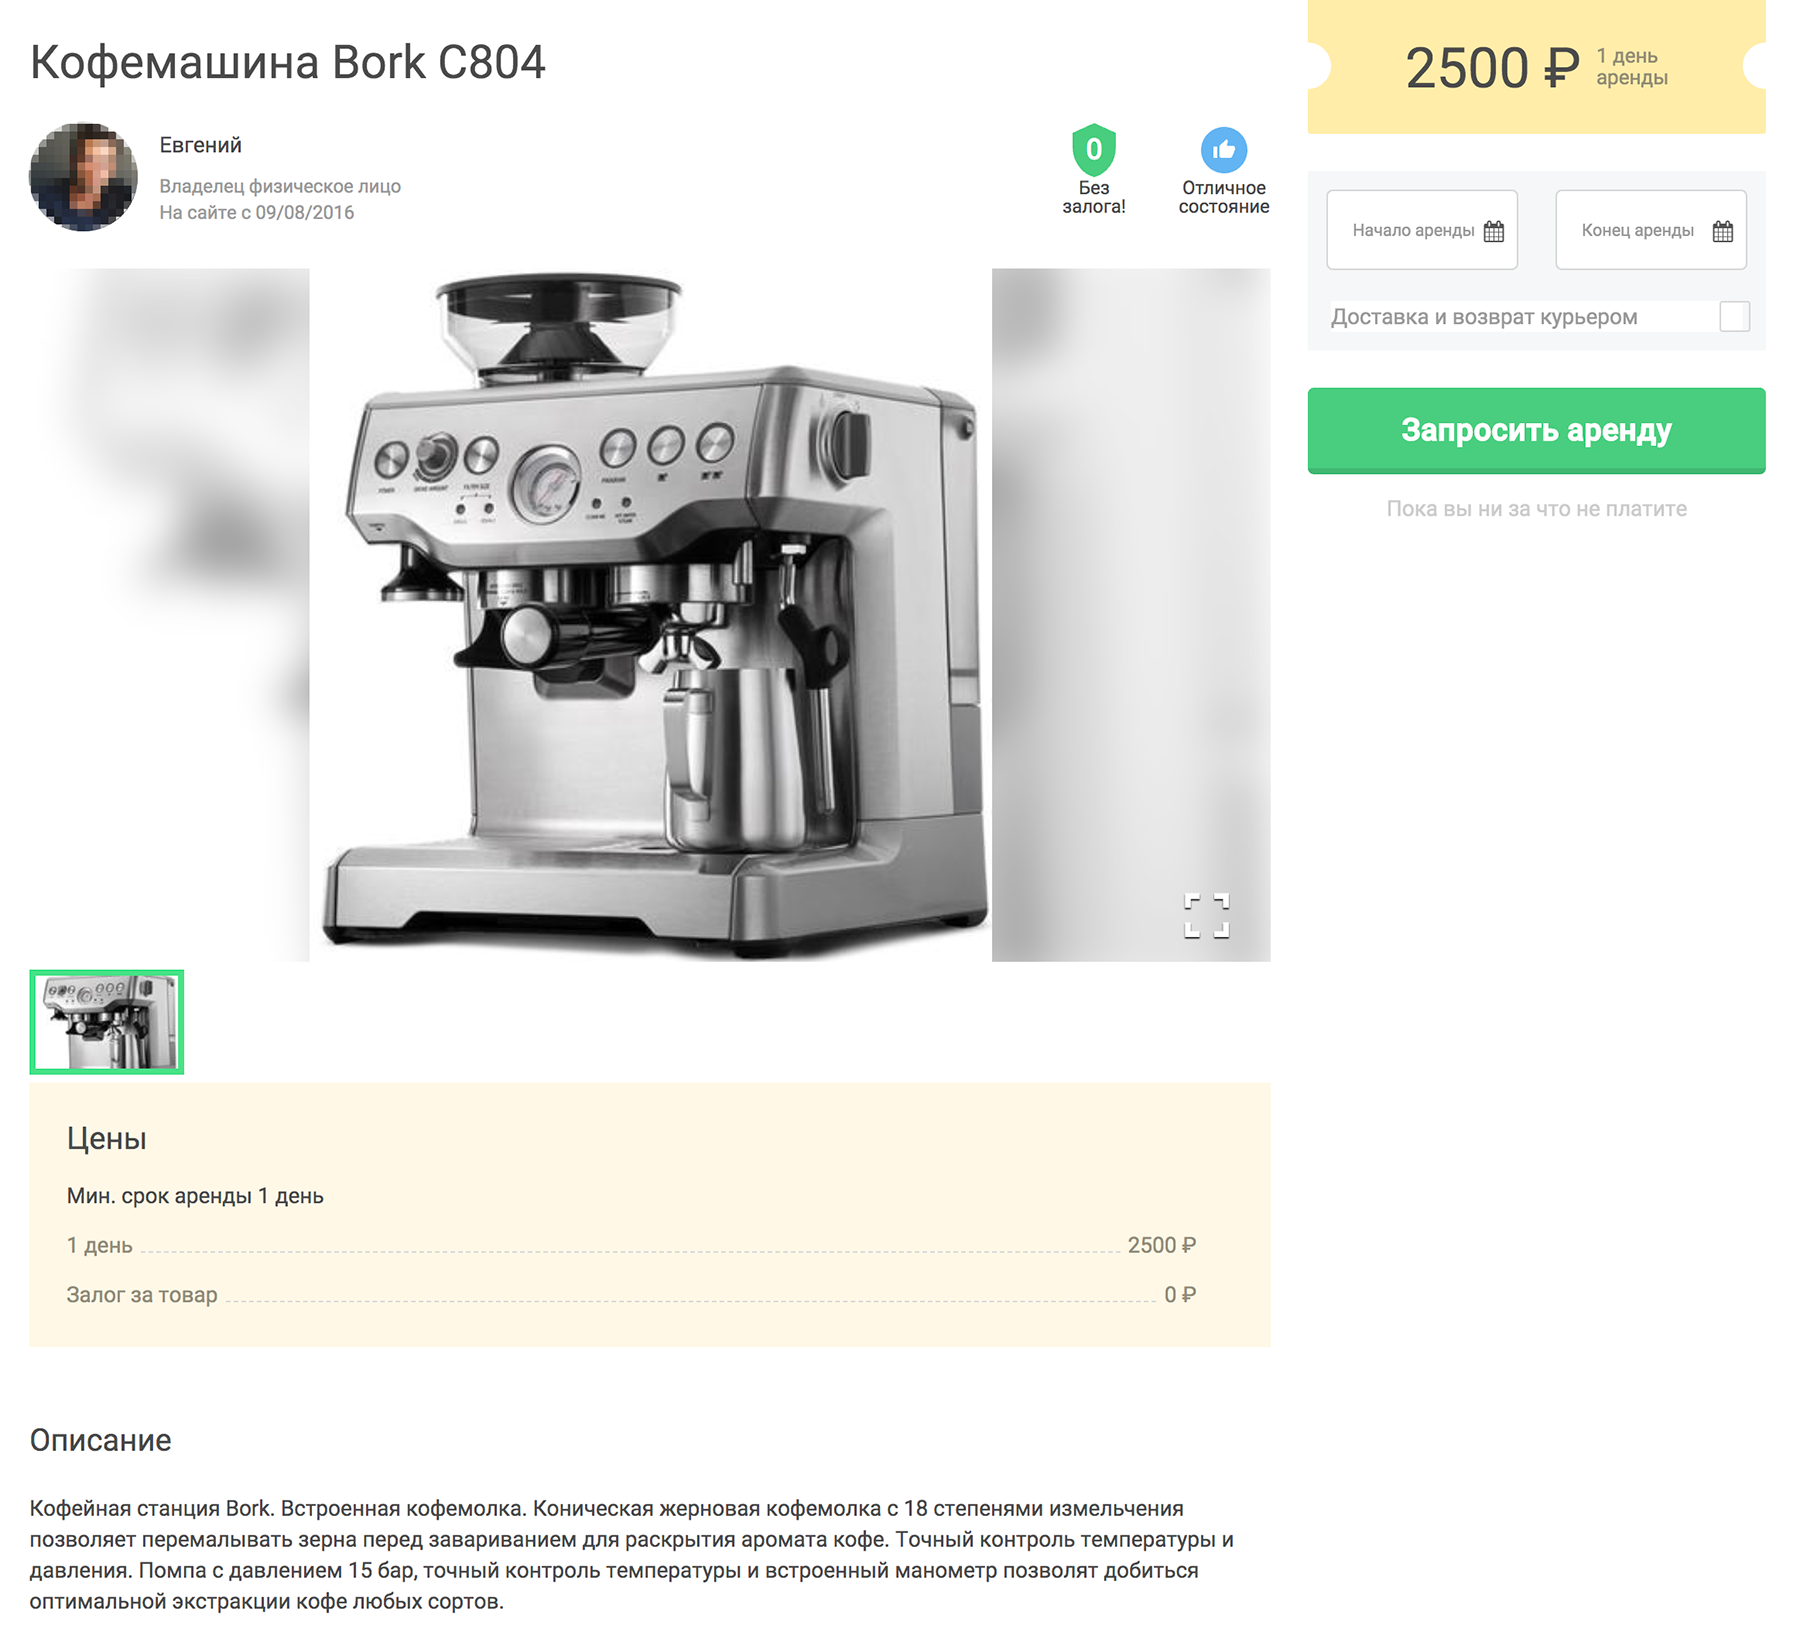 Кофемашину сдают в аренду за 2500 ₽ в день. В интернет-магазине «Борк» эта модель стоит 68 800 ₽